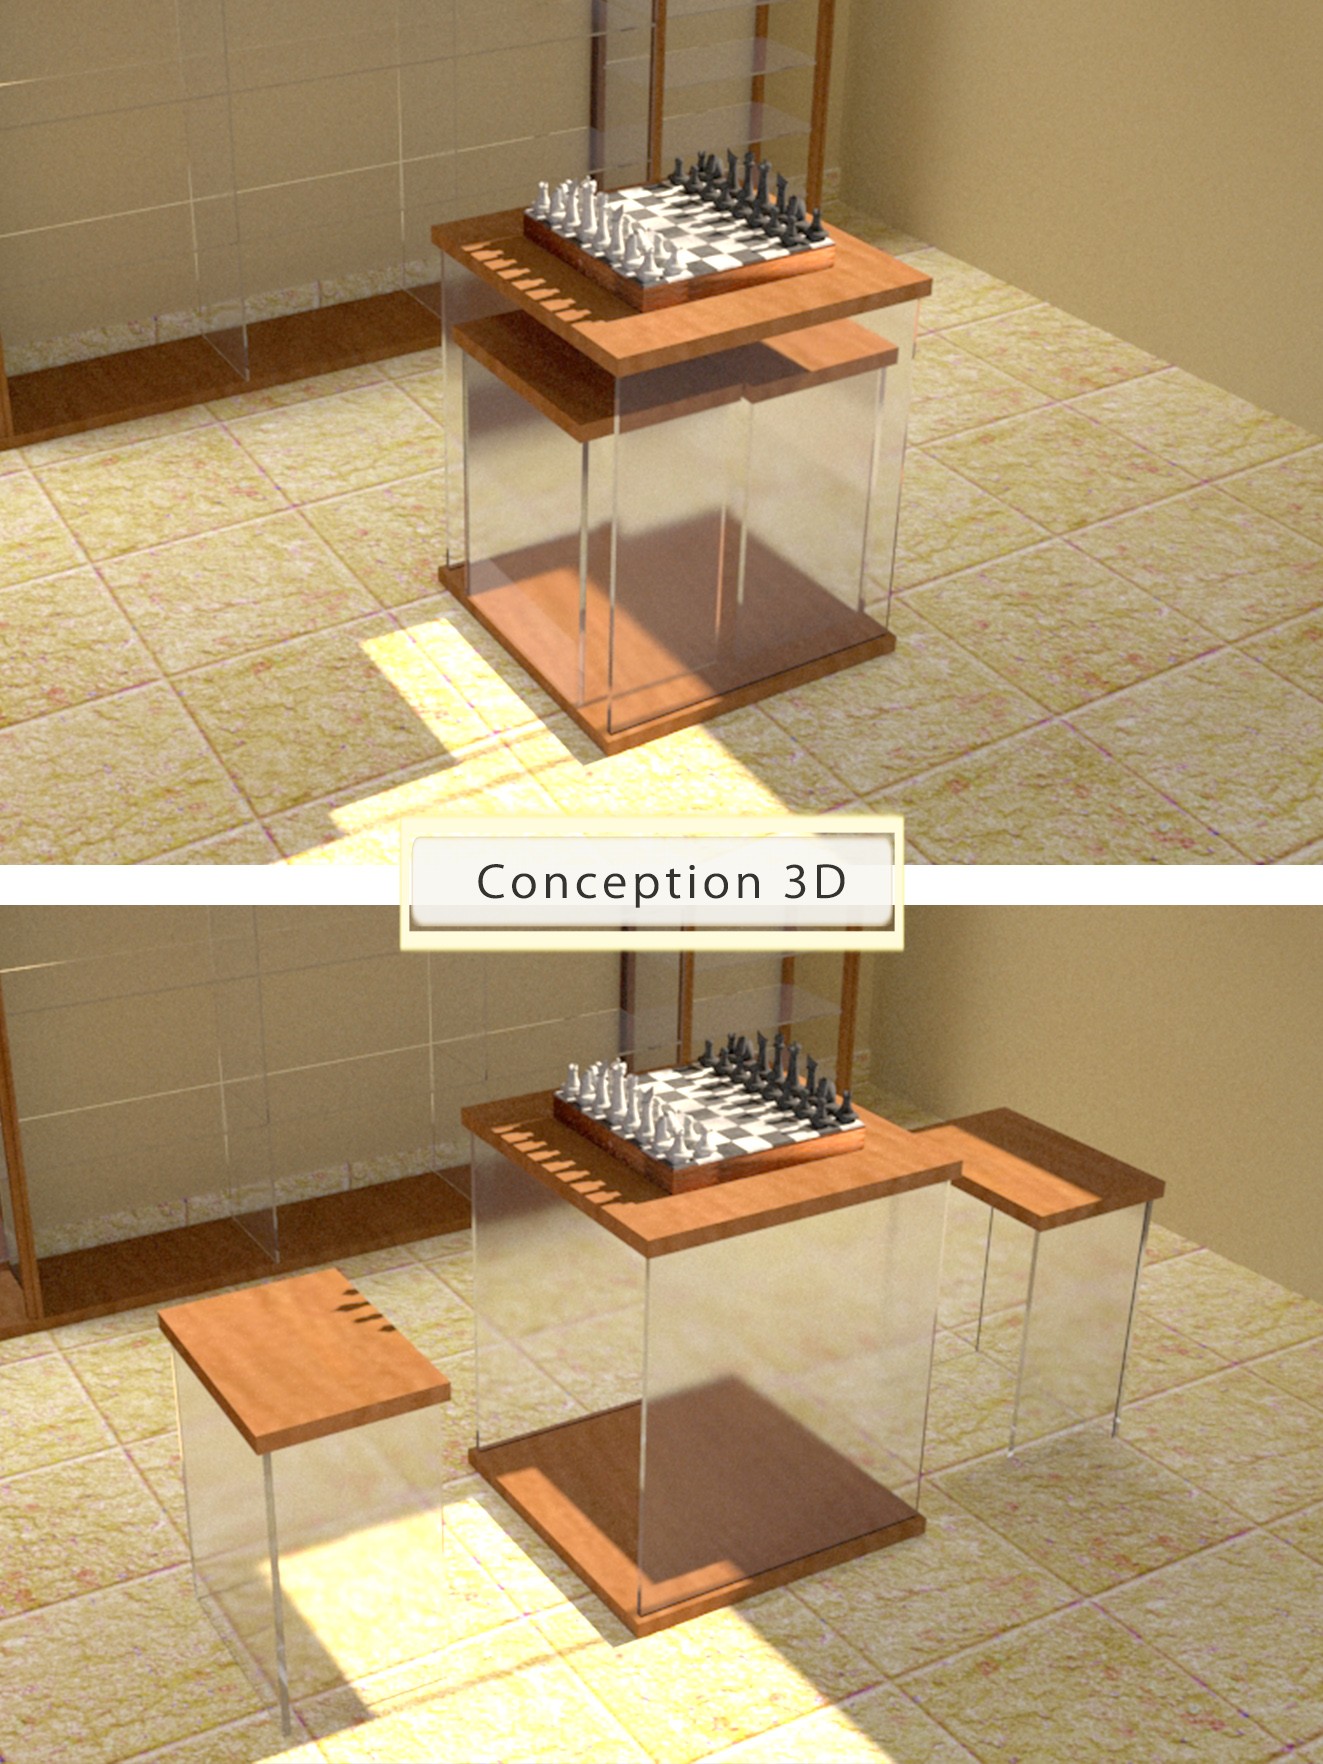 Conception 3D